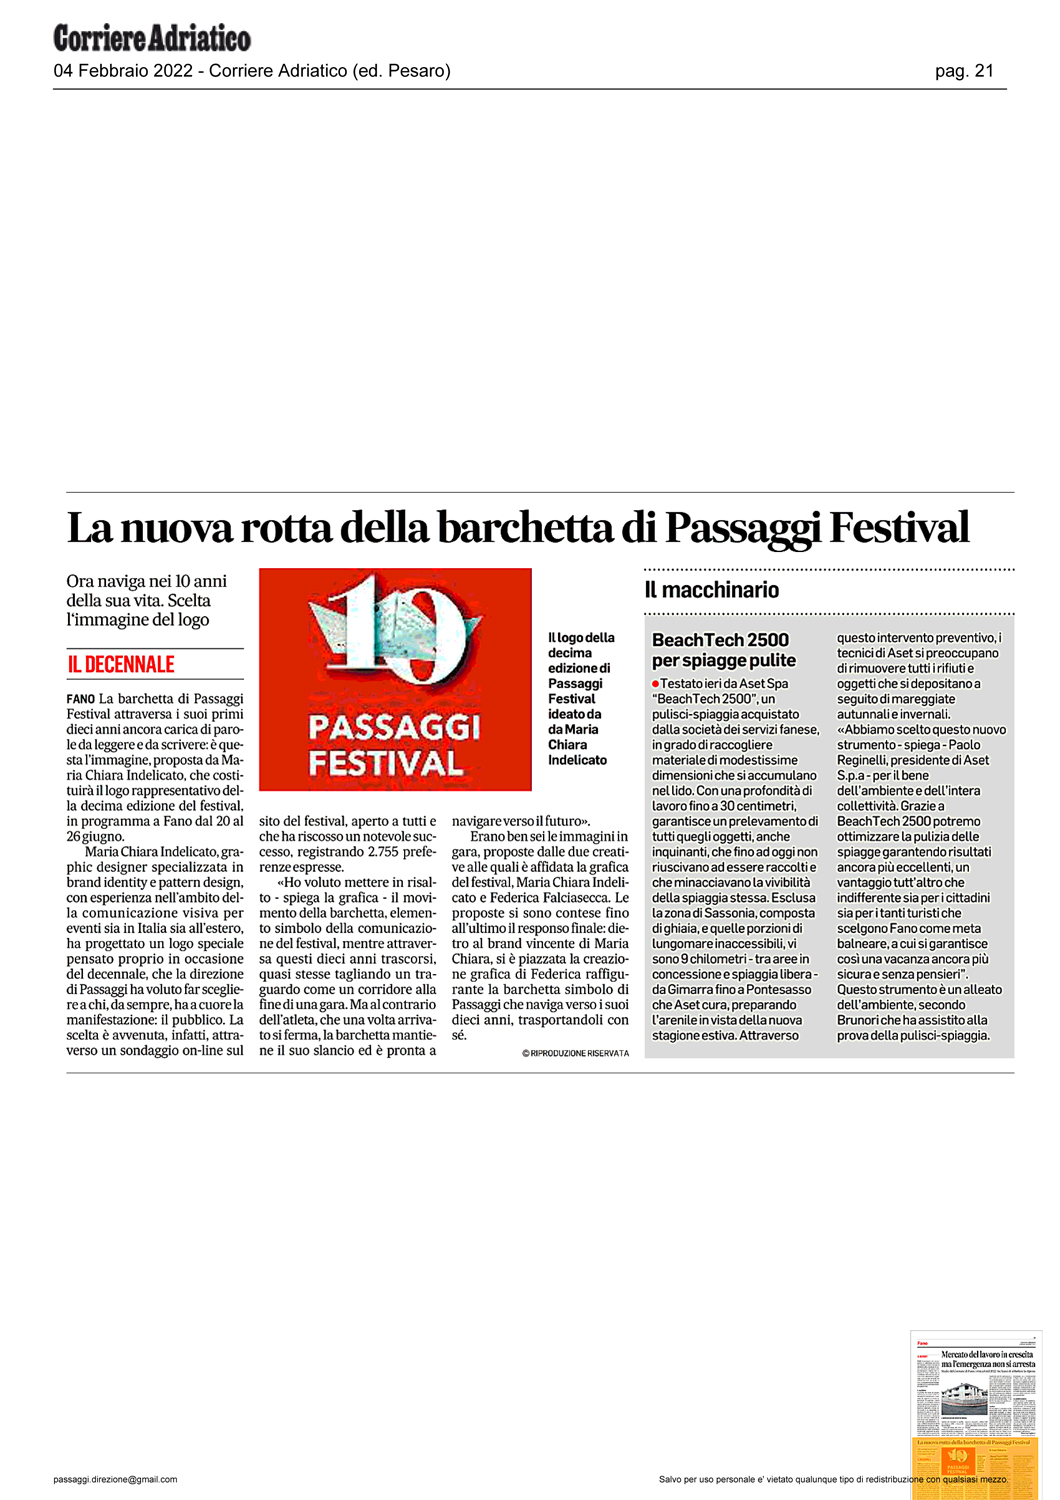 Corriere_Adriatico-la-nuova-rotta-della-barchetta-di-passaggi-festival.